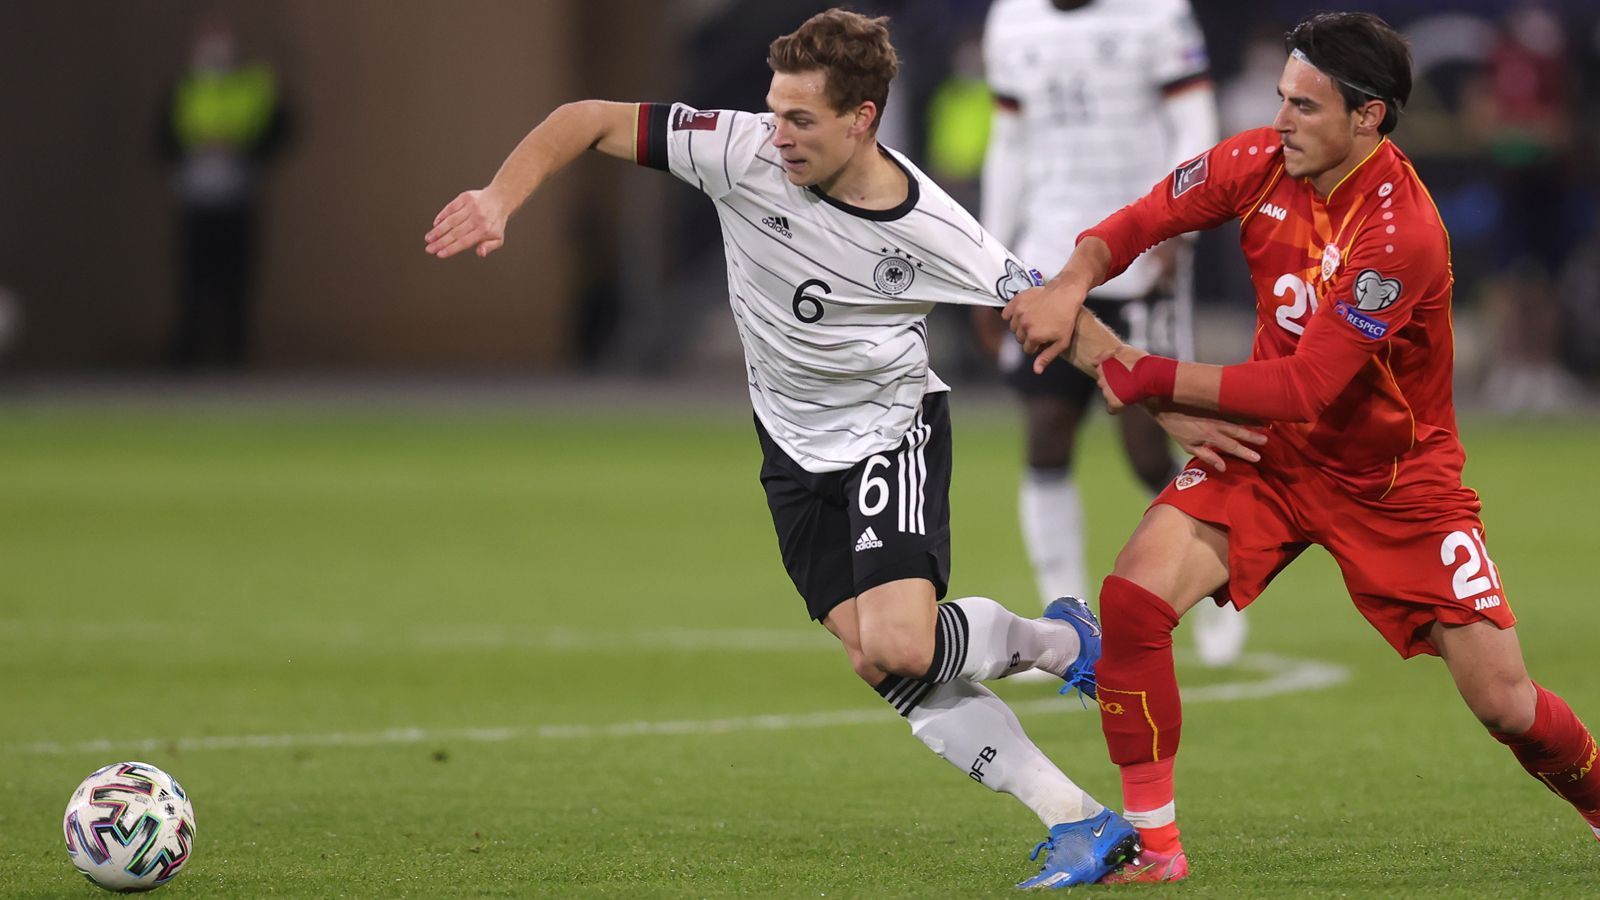 
                <strong>Joshua Kimmich </strong><br>
                Der Bayern-Star Joshua Kimmich gehört bei den Münchnern wie auch im DFB-Team seit Jahren zu den absoluten Leistungsträgern. Für die deutsche Nationalmannschaft lief der 26-Jährige bereits 52 Mal auf. 
              